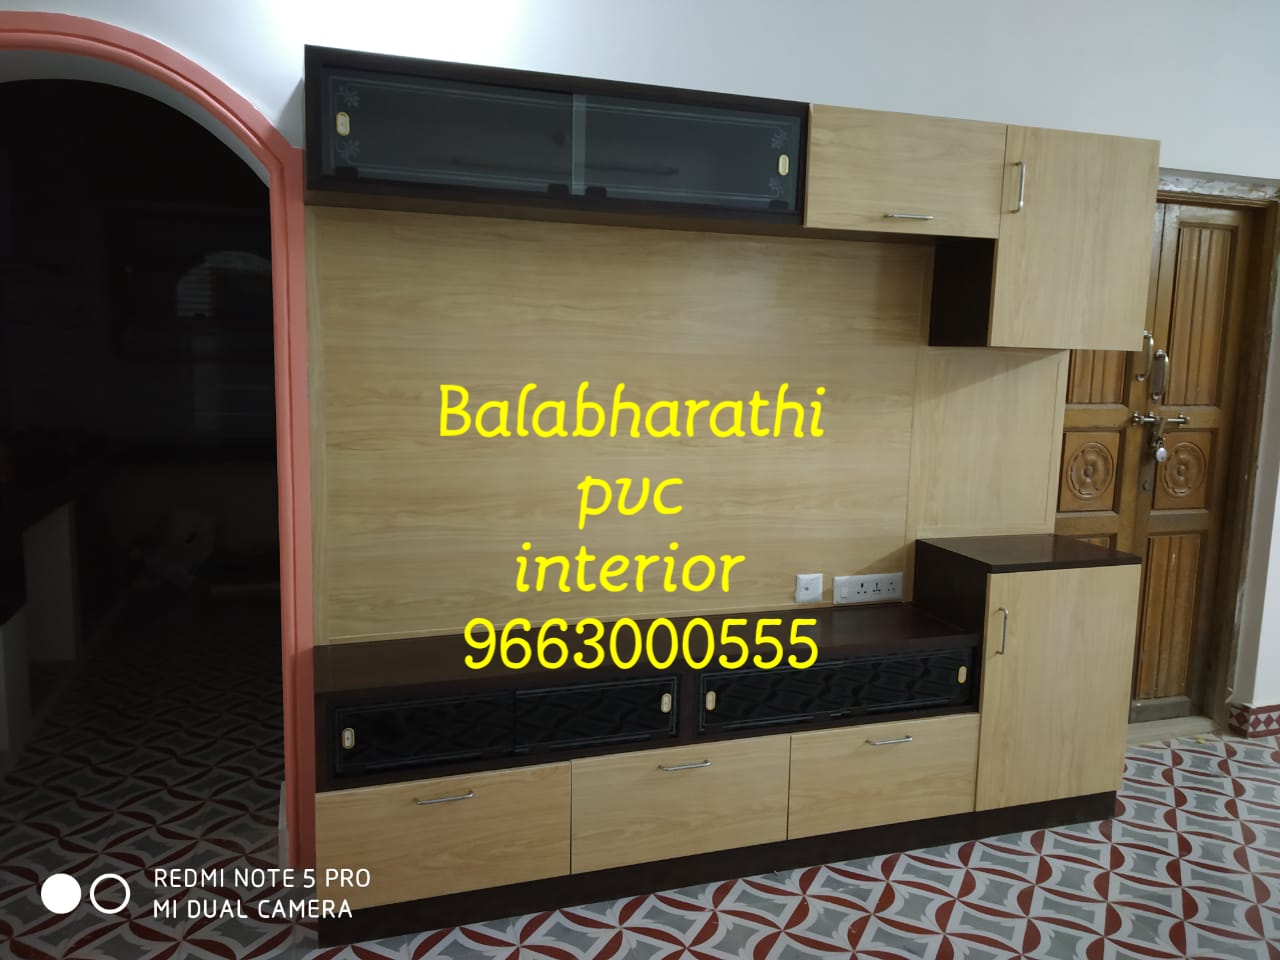 Balabharathi Interior Hosur Kirshnagiri Bangalore Pvc